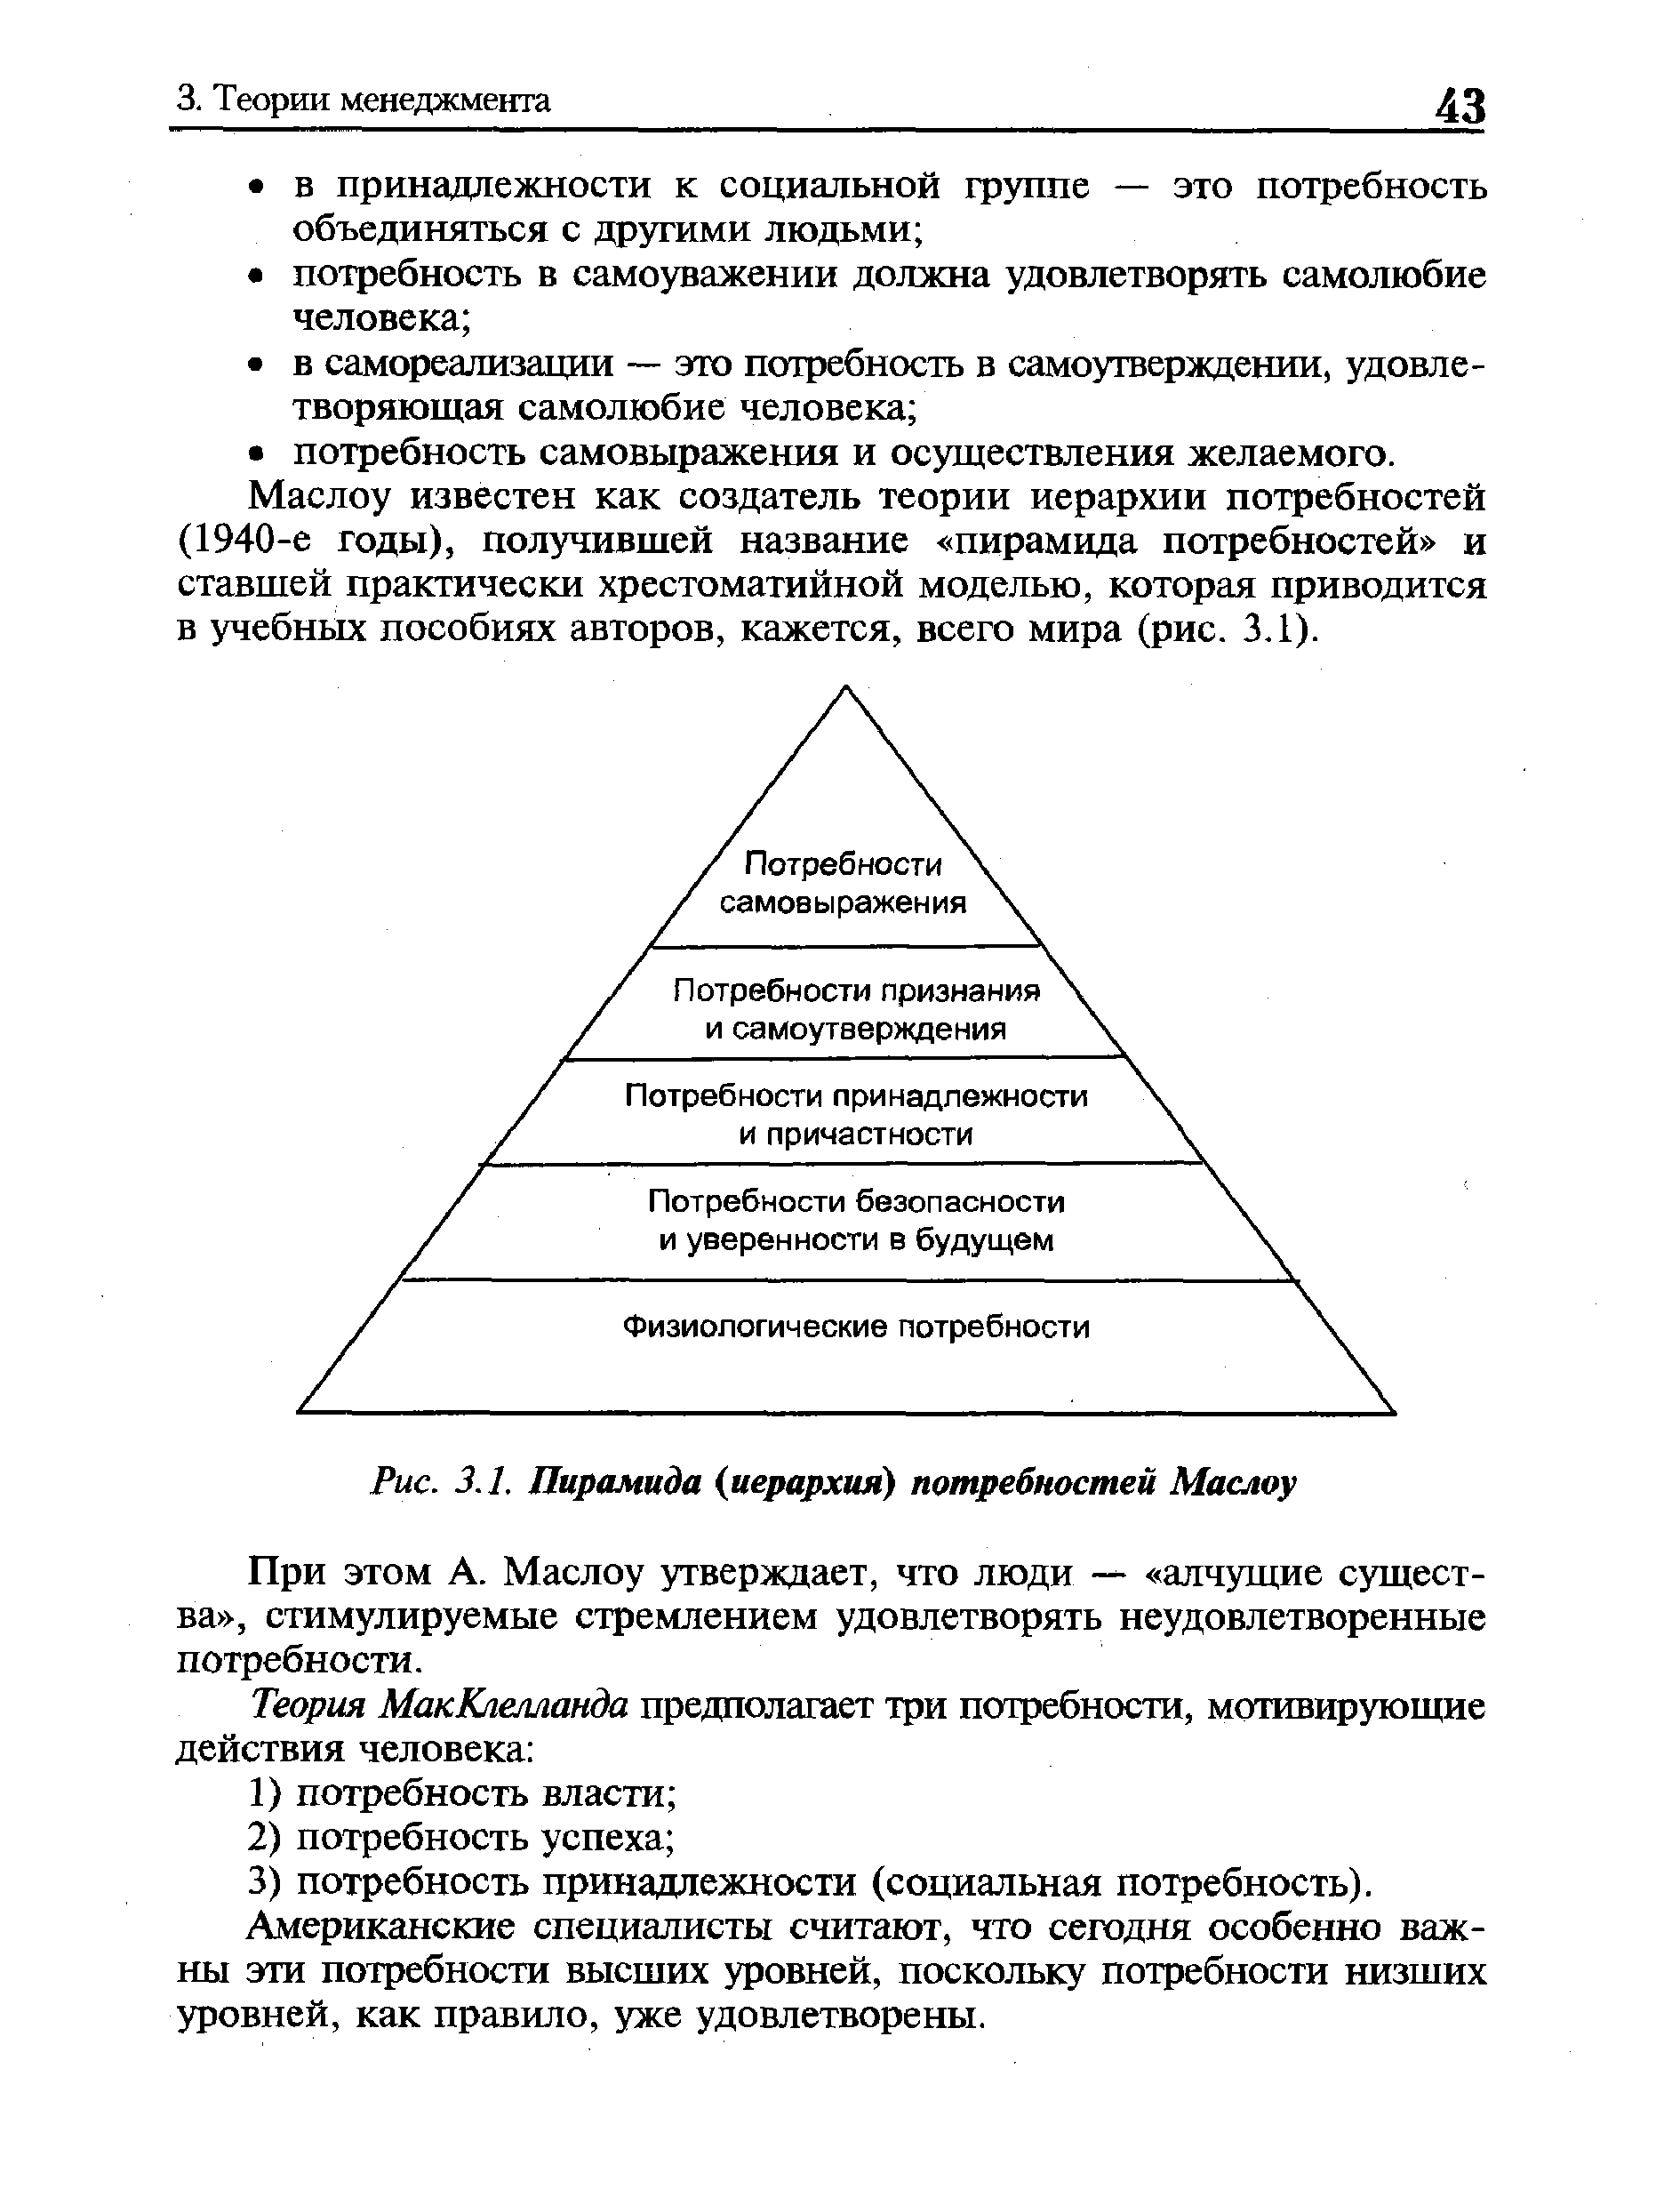 Рис. 3.1, Пирамида (иерархия) потребностей Маслоу
